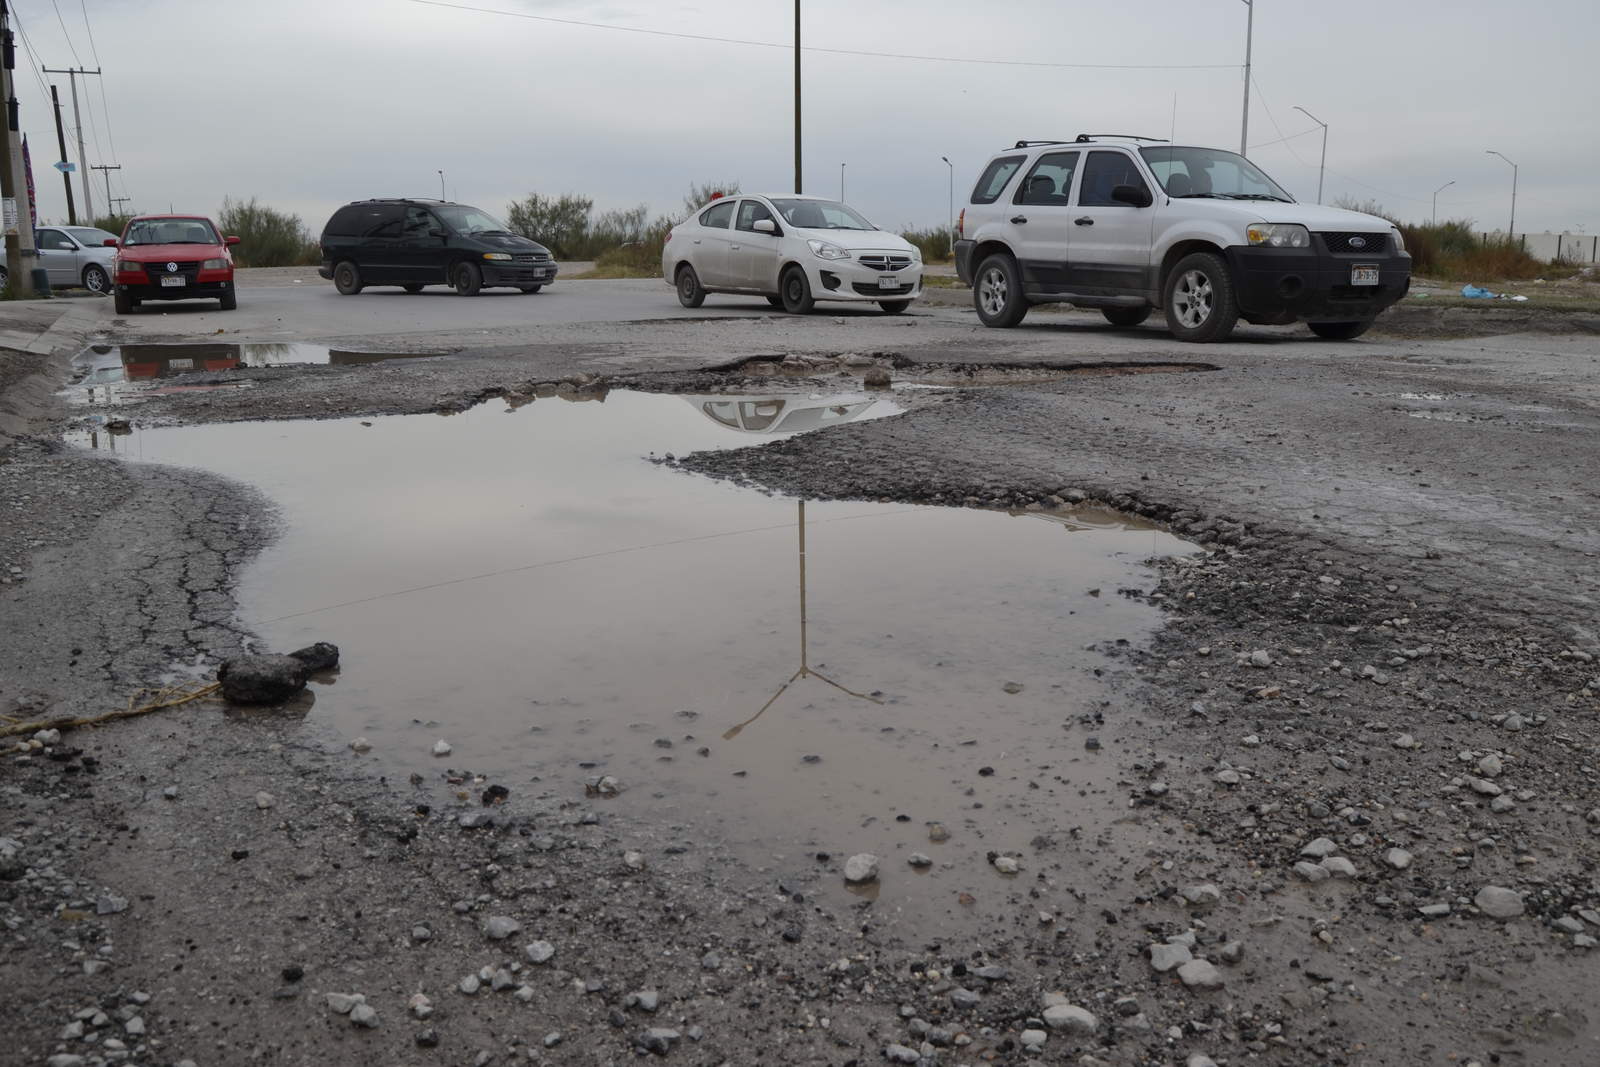 Vehículos evaden bache pronunciado en la avenida Bromo, cerca de la glorieta ubicada en el bulevar Torreón 2000. El pavimento tiene meses en estas condiciones. (EDITH GONZÁLEZ)
